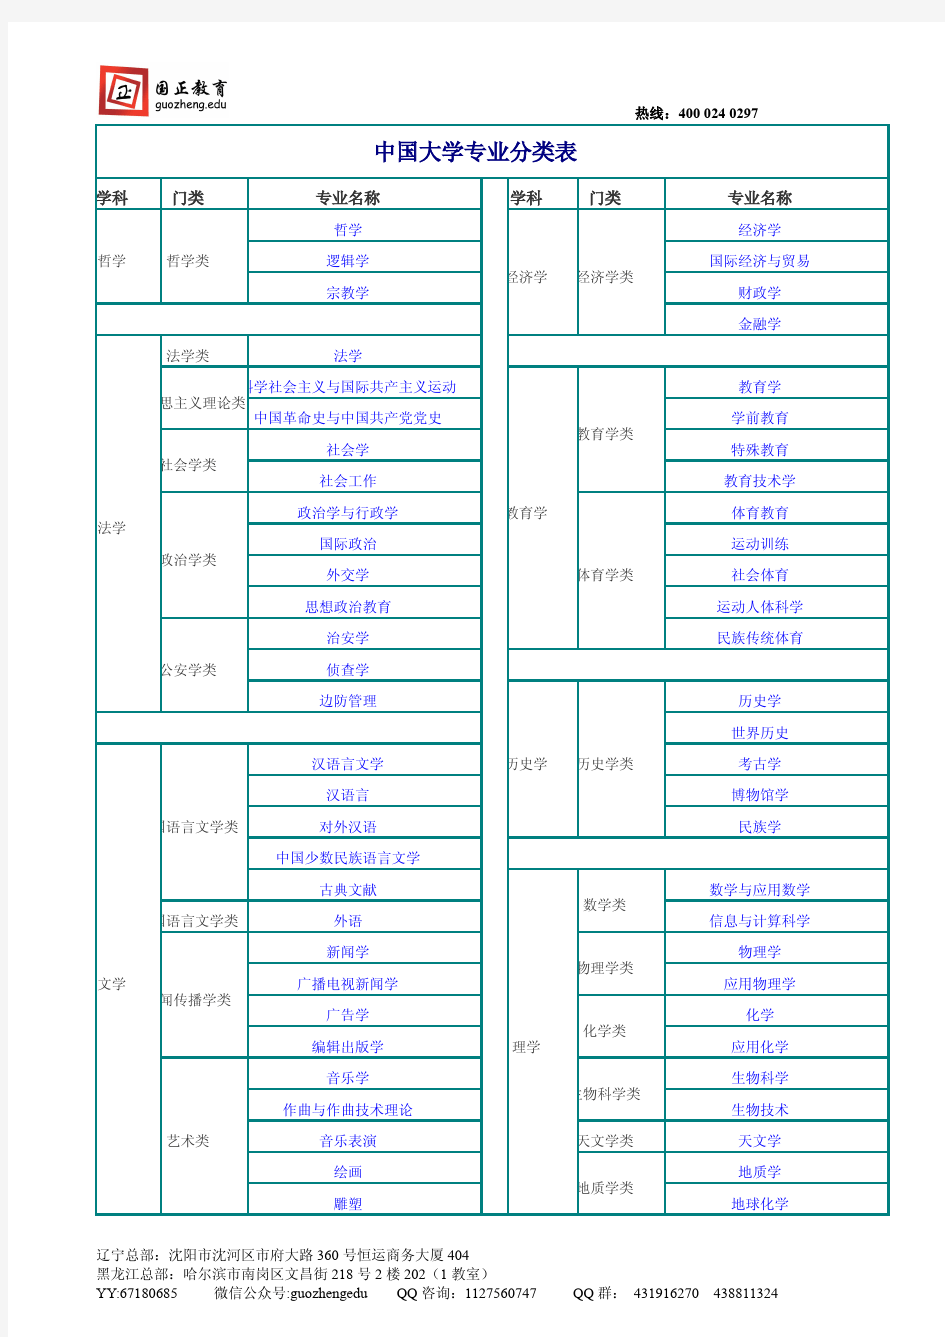 中国大学专业分类表(国正公务员)